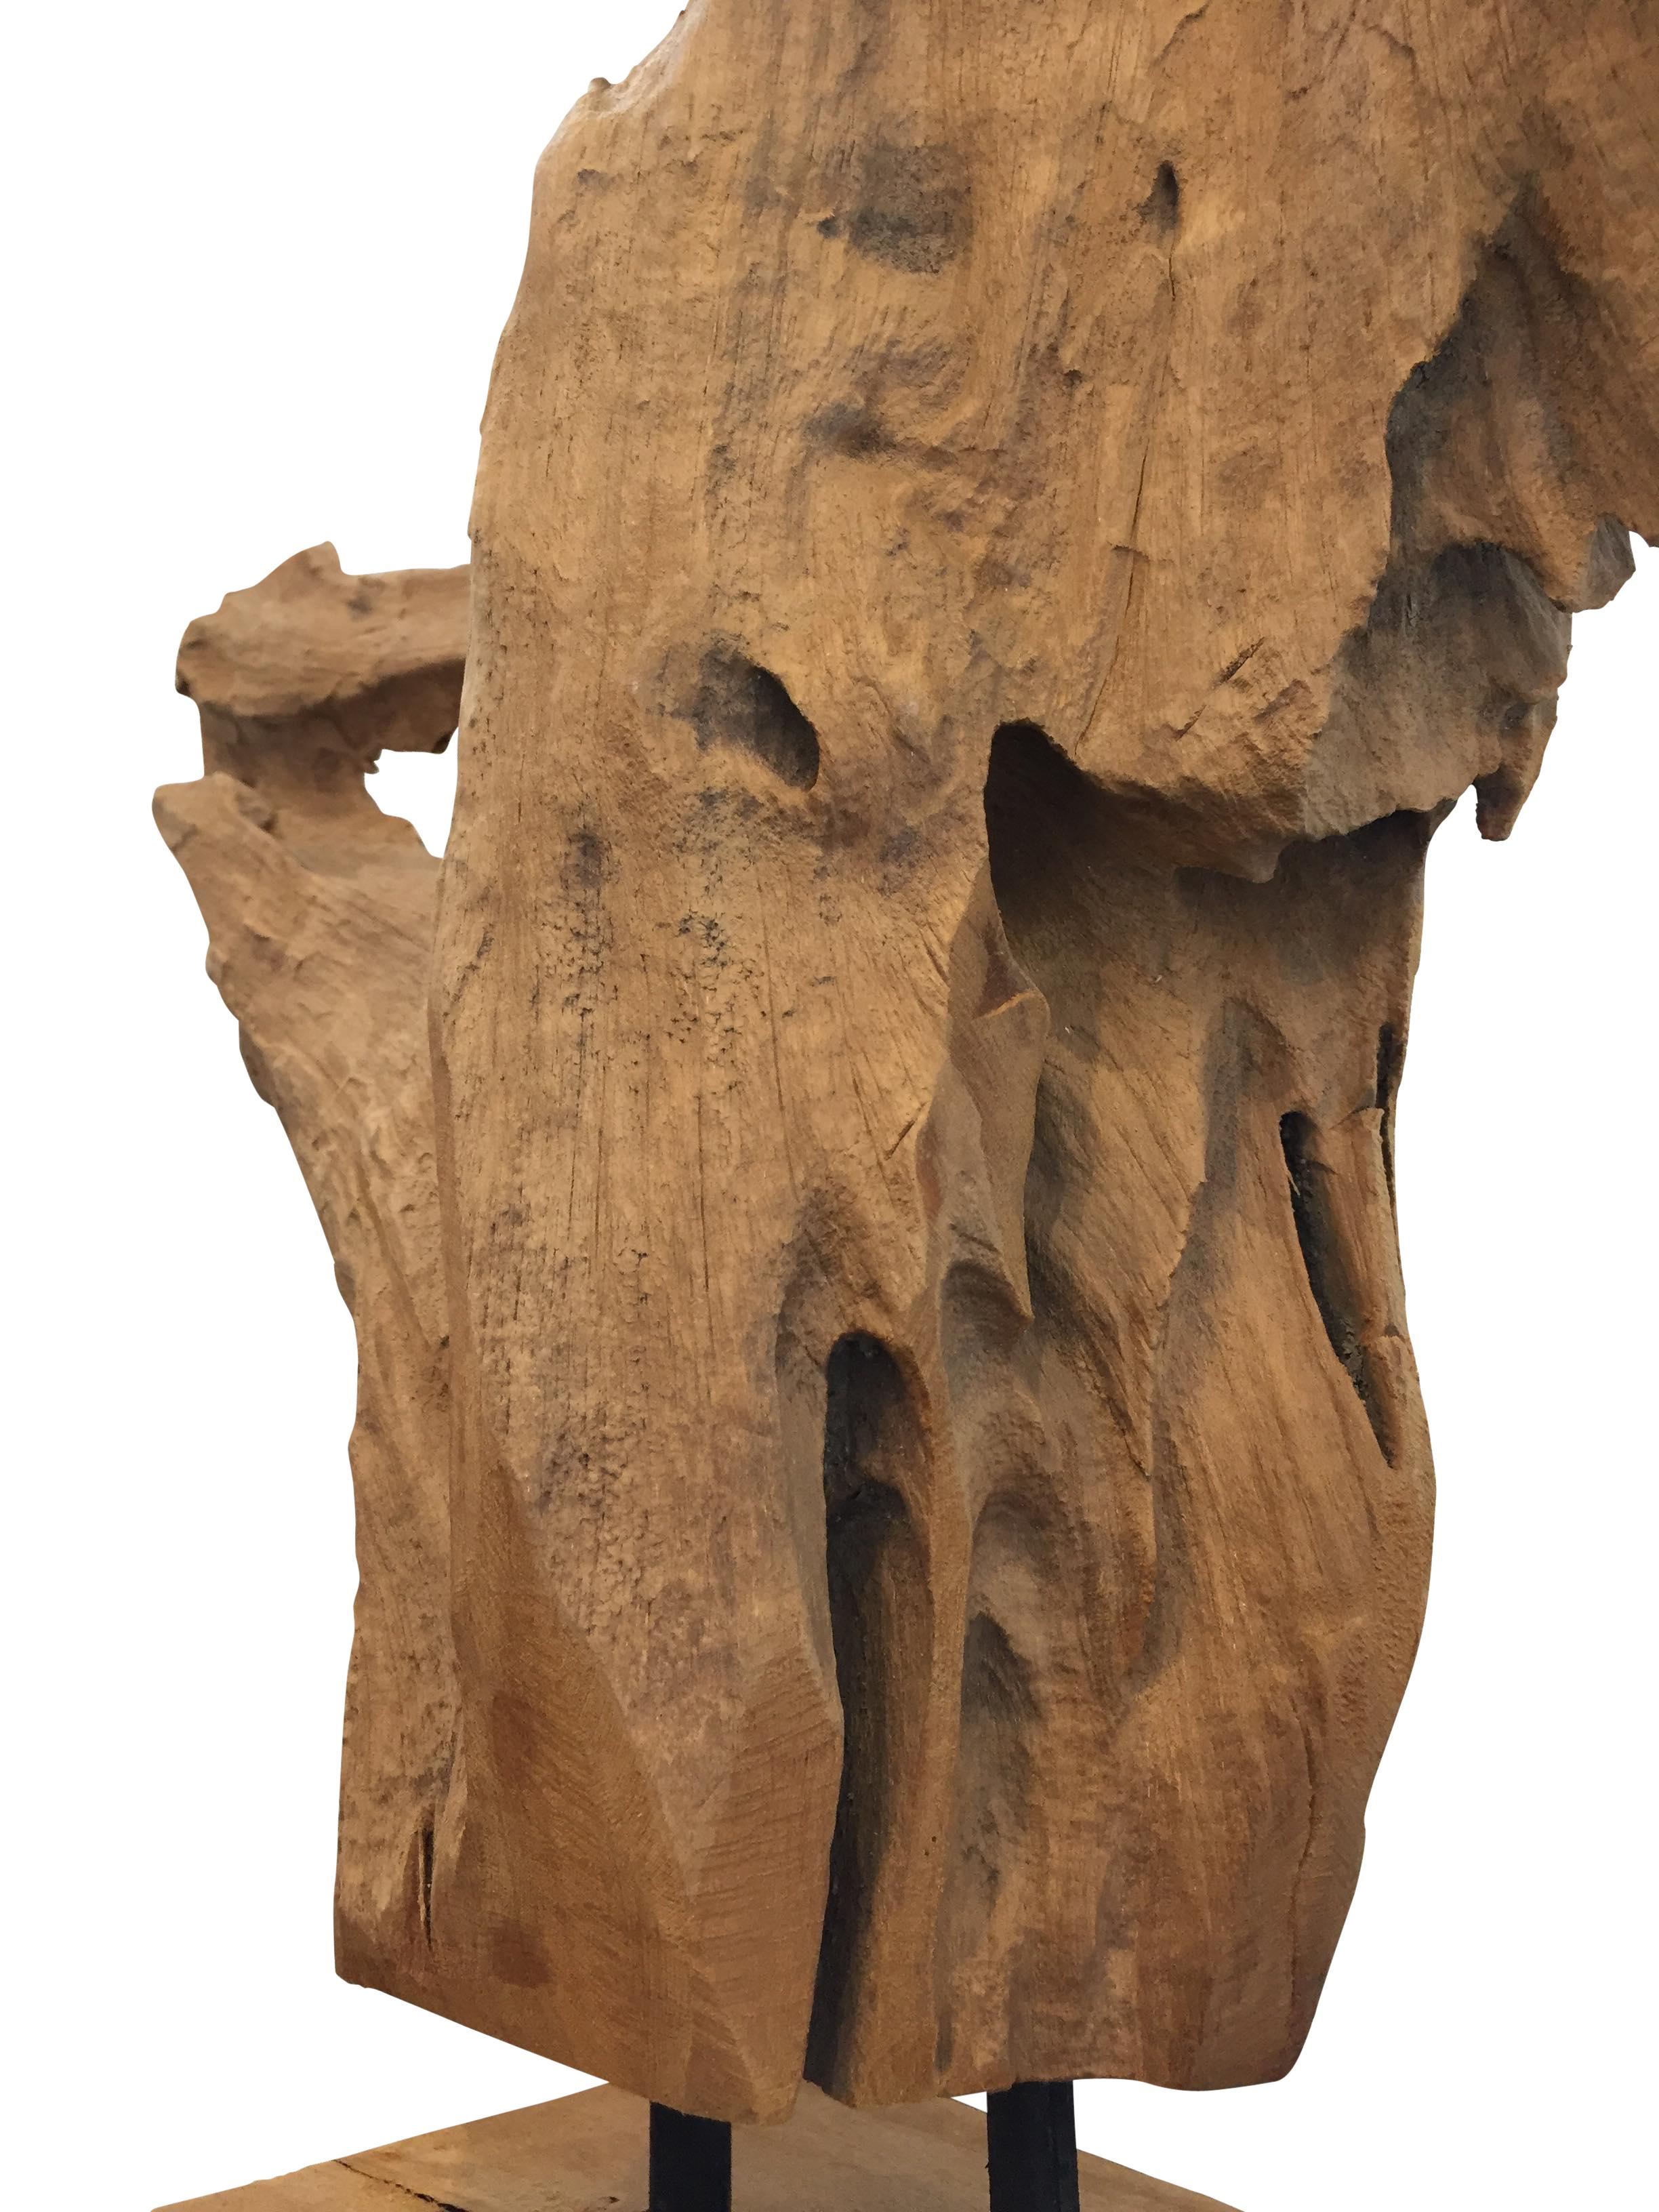 20th Century Midcentury Mounted Driftwood Specimen from the Washington Coastline